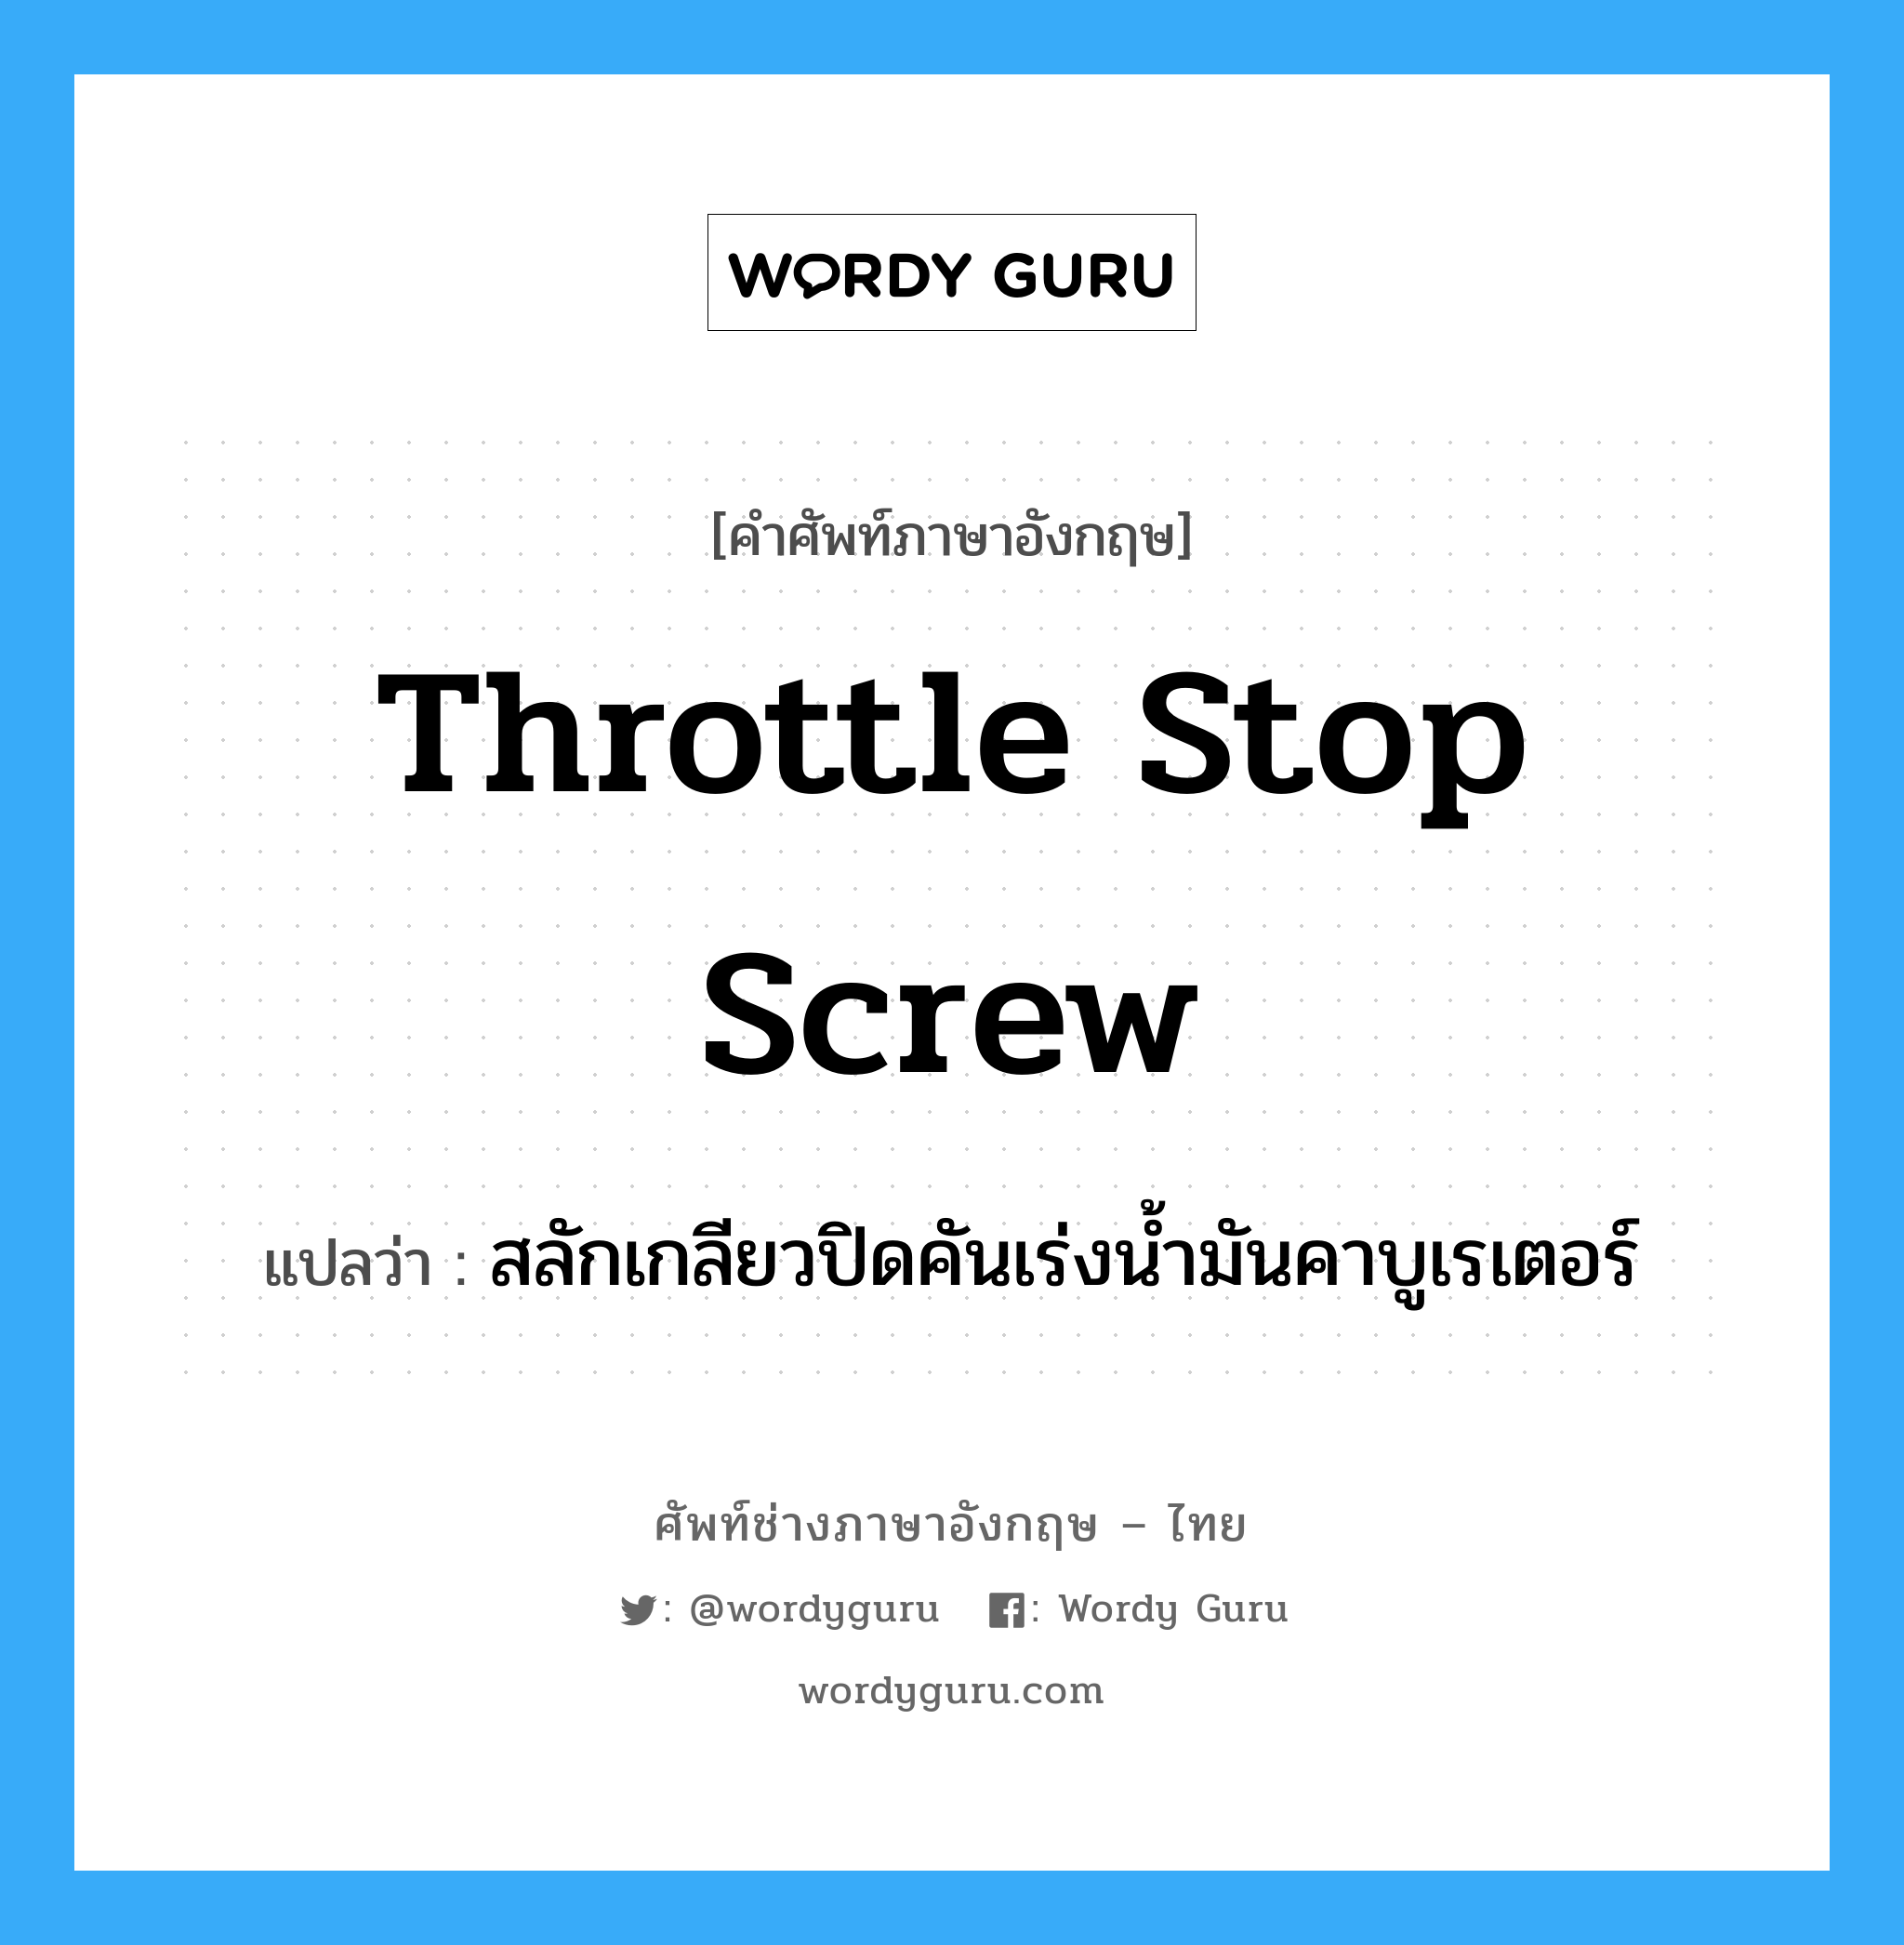 throttle stop screw แปลว่า?, คำศัพท์ช่างภาษาอังกฤษ - ไทย throttle stop screw คำศัพท์ภาษาอังกฤษ throttle stop screw แปลว่า สลักเกลียวปิดคันเร่งน้ำมันคาบูเรเตอร์